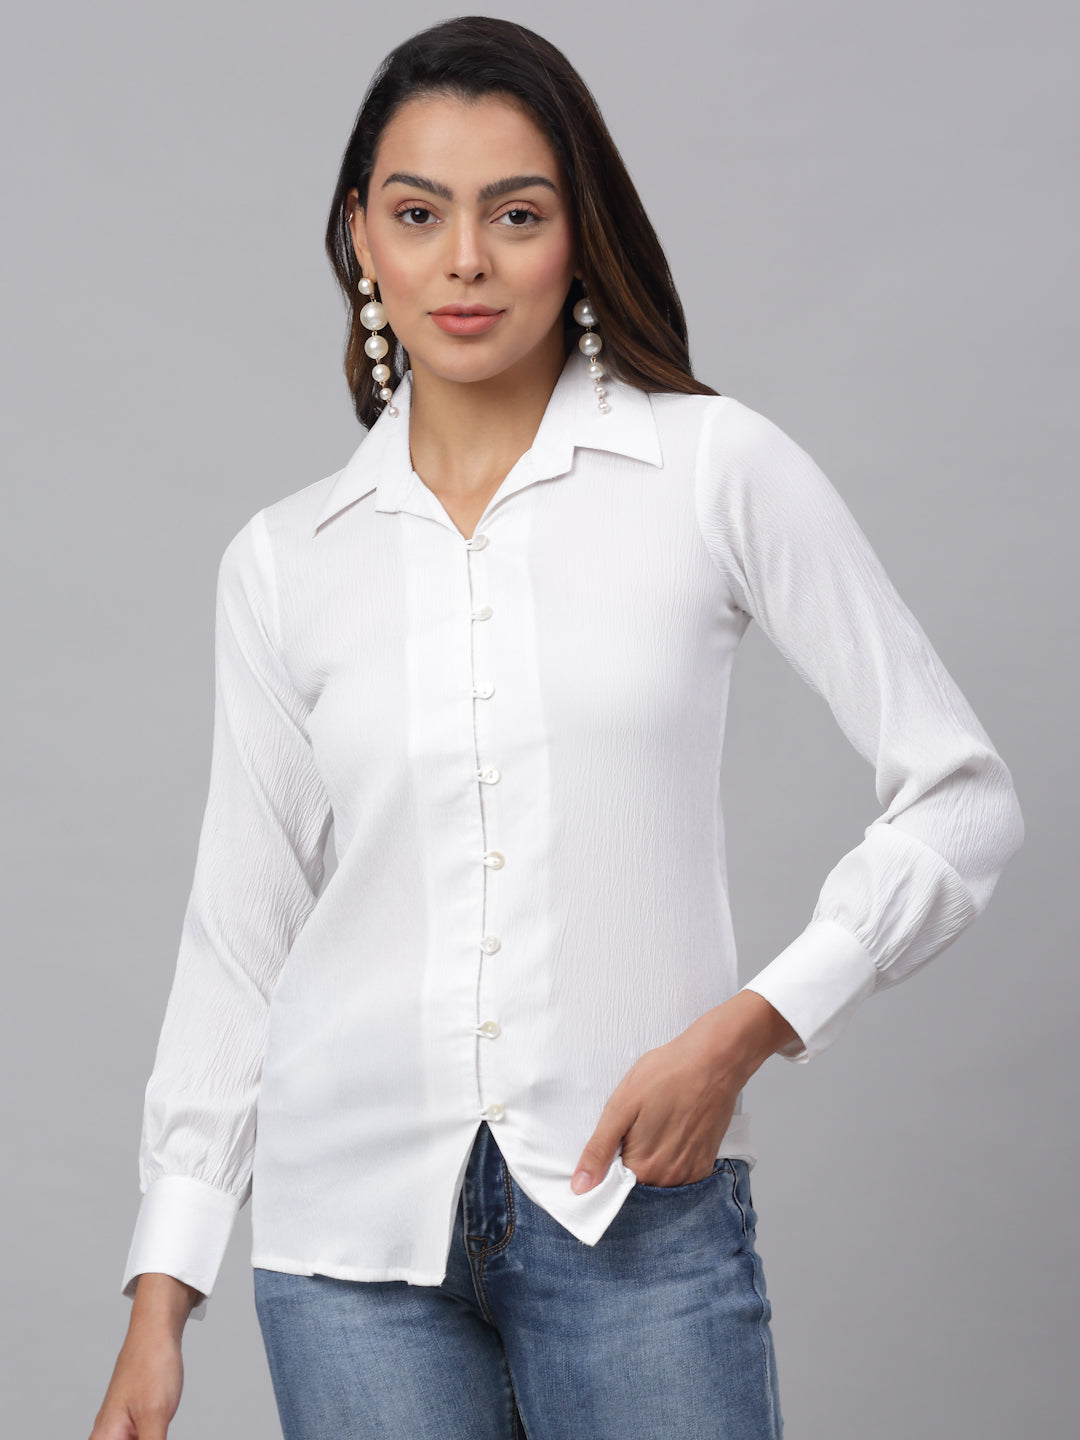 Jainish Women's White Solid Shirt - White - Distacart